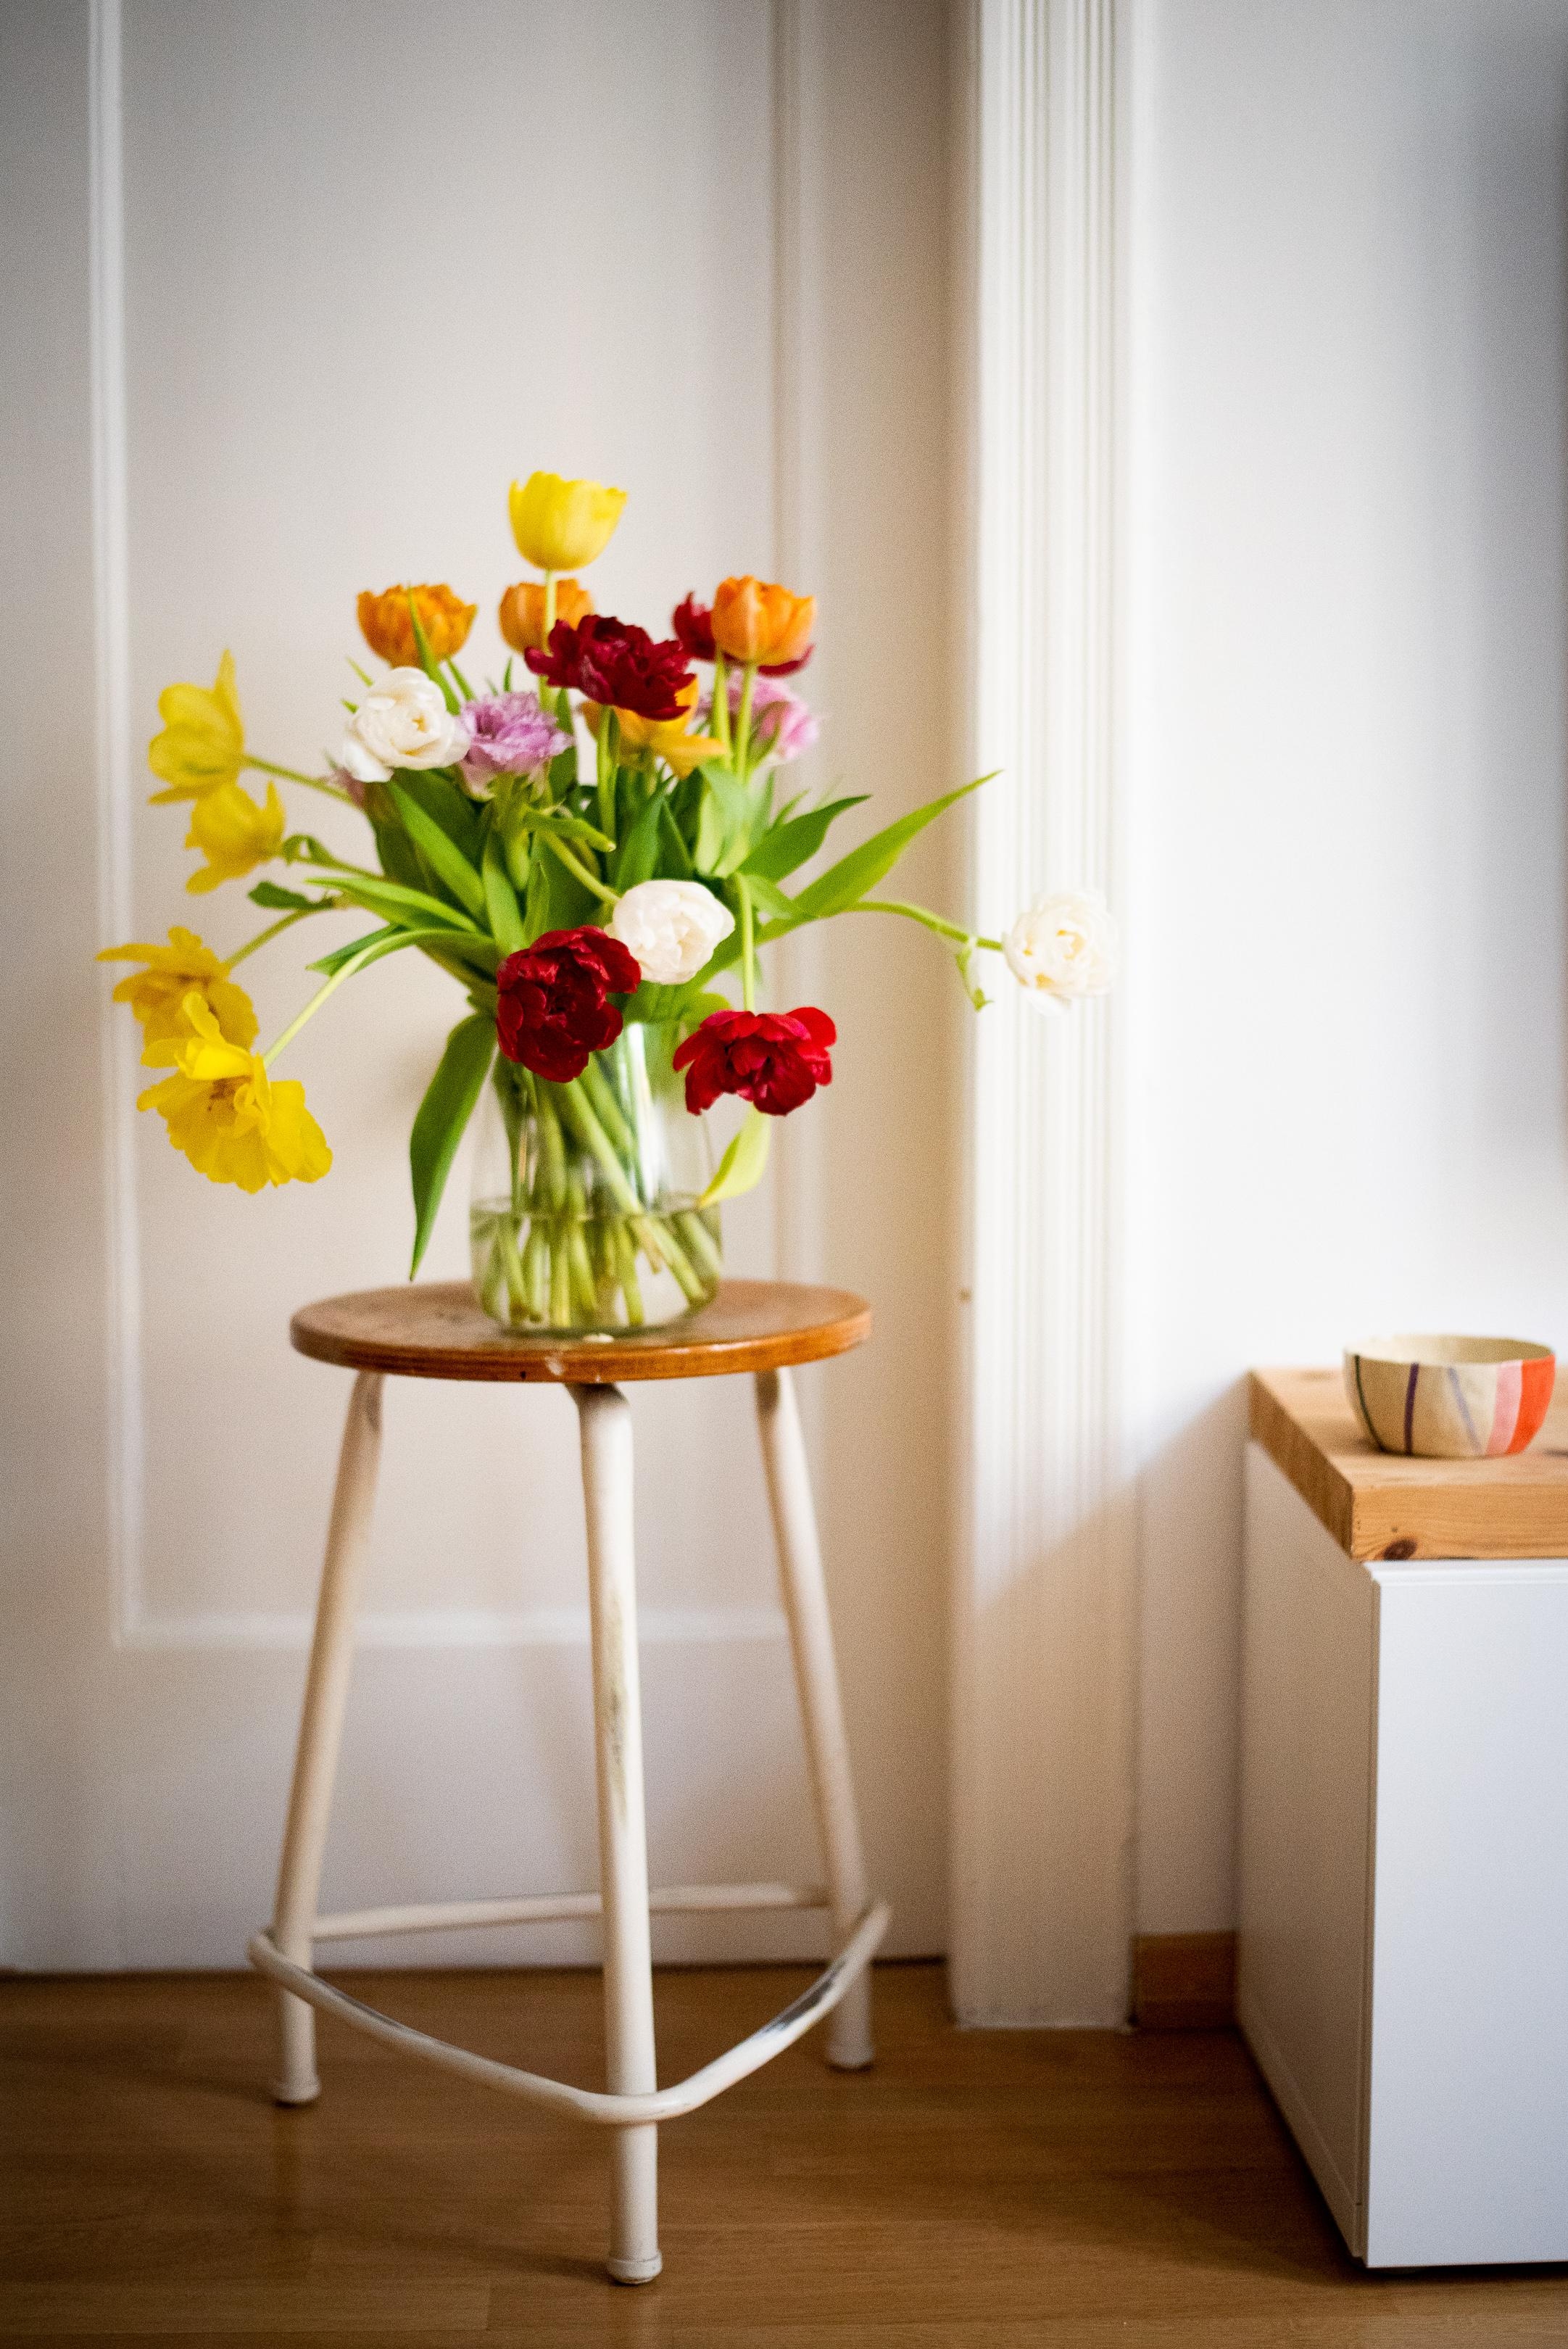 Farbiger Gruß am tristen Mittwoch... #freshflowers #tulpen #vase #vintag #hocker #altbau #interiorinspo #wohnzimmer